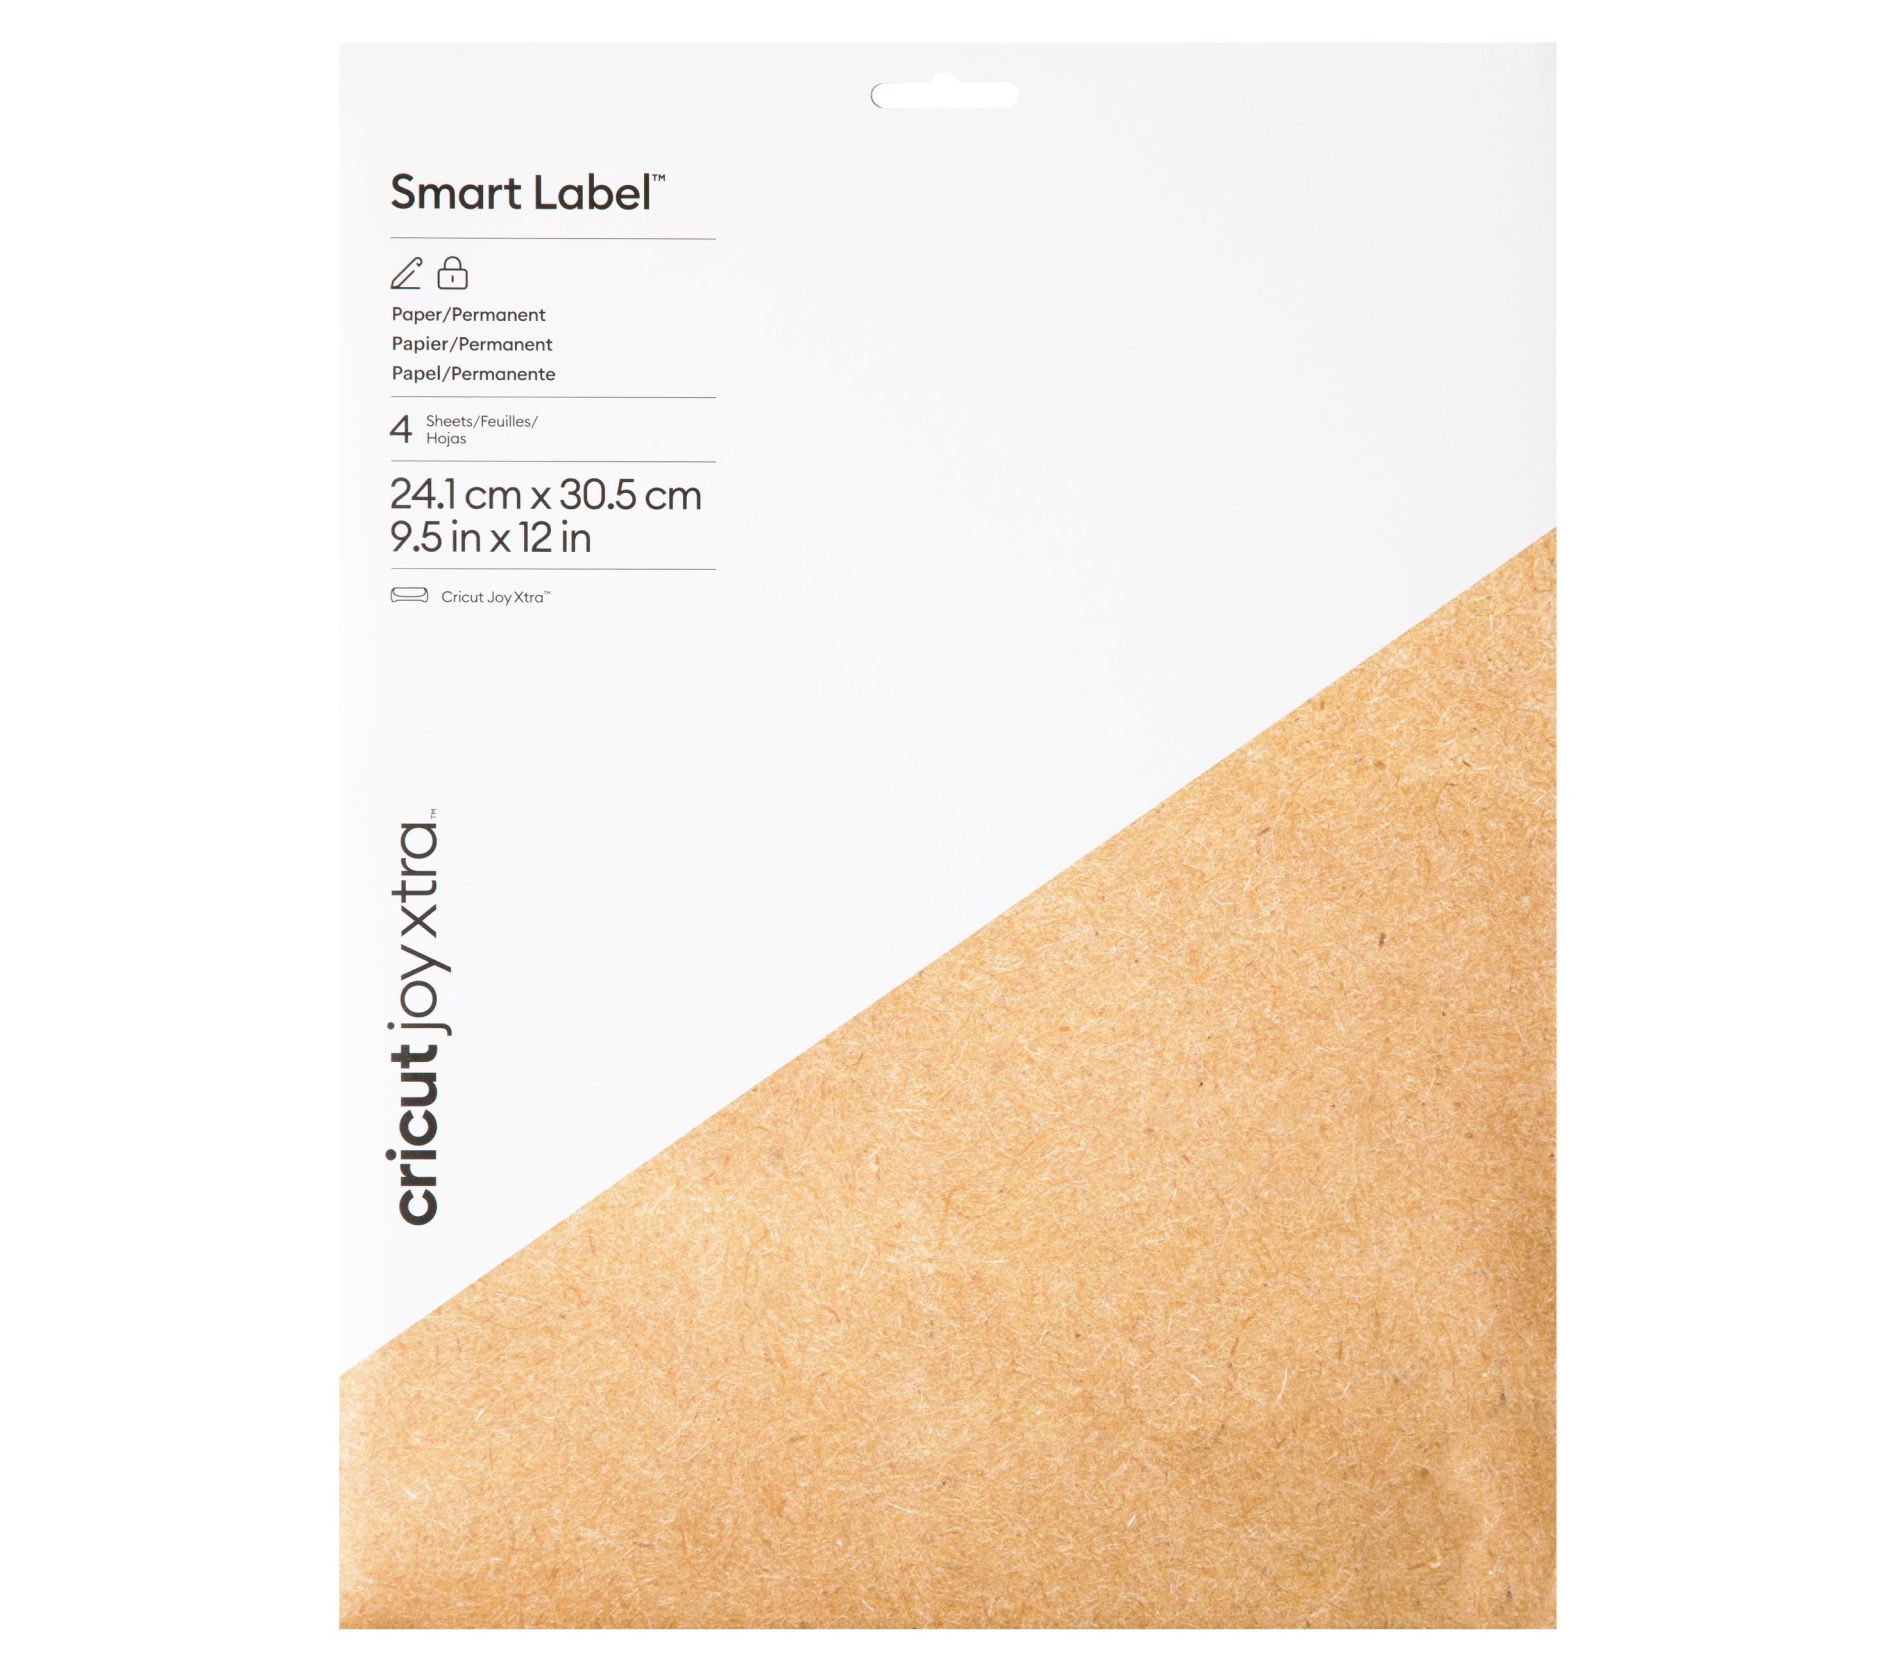 Cricut Joy Xtra Smart Label Paper - Permanent 4ct 